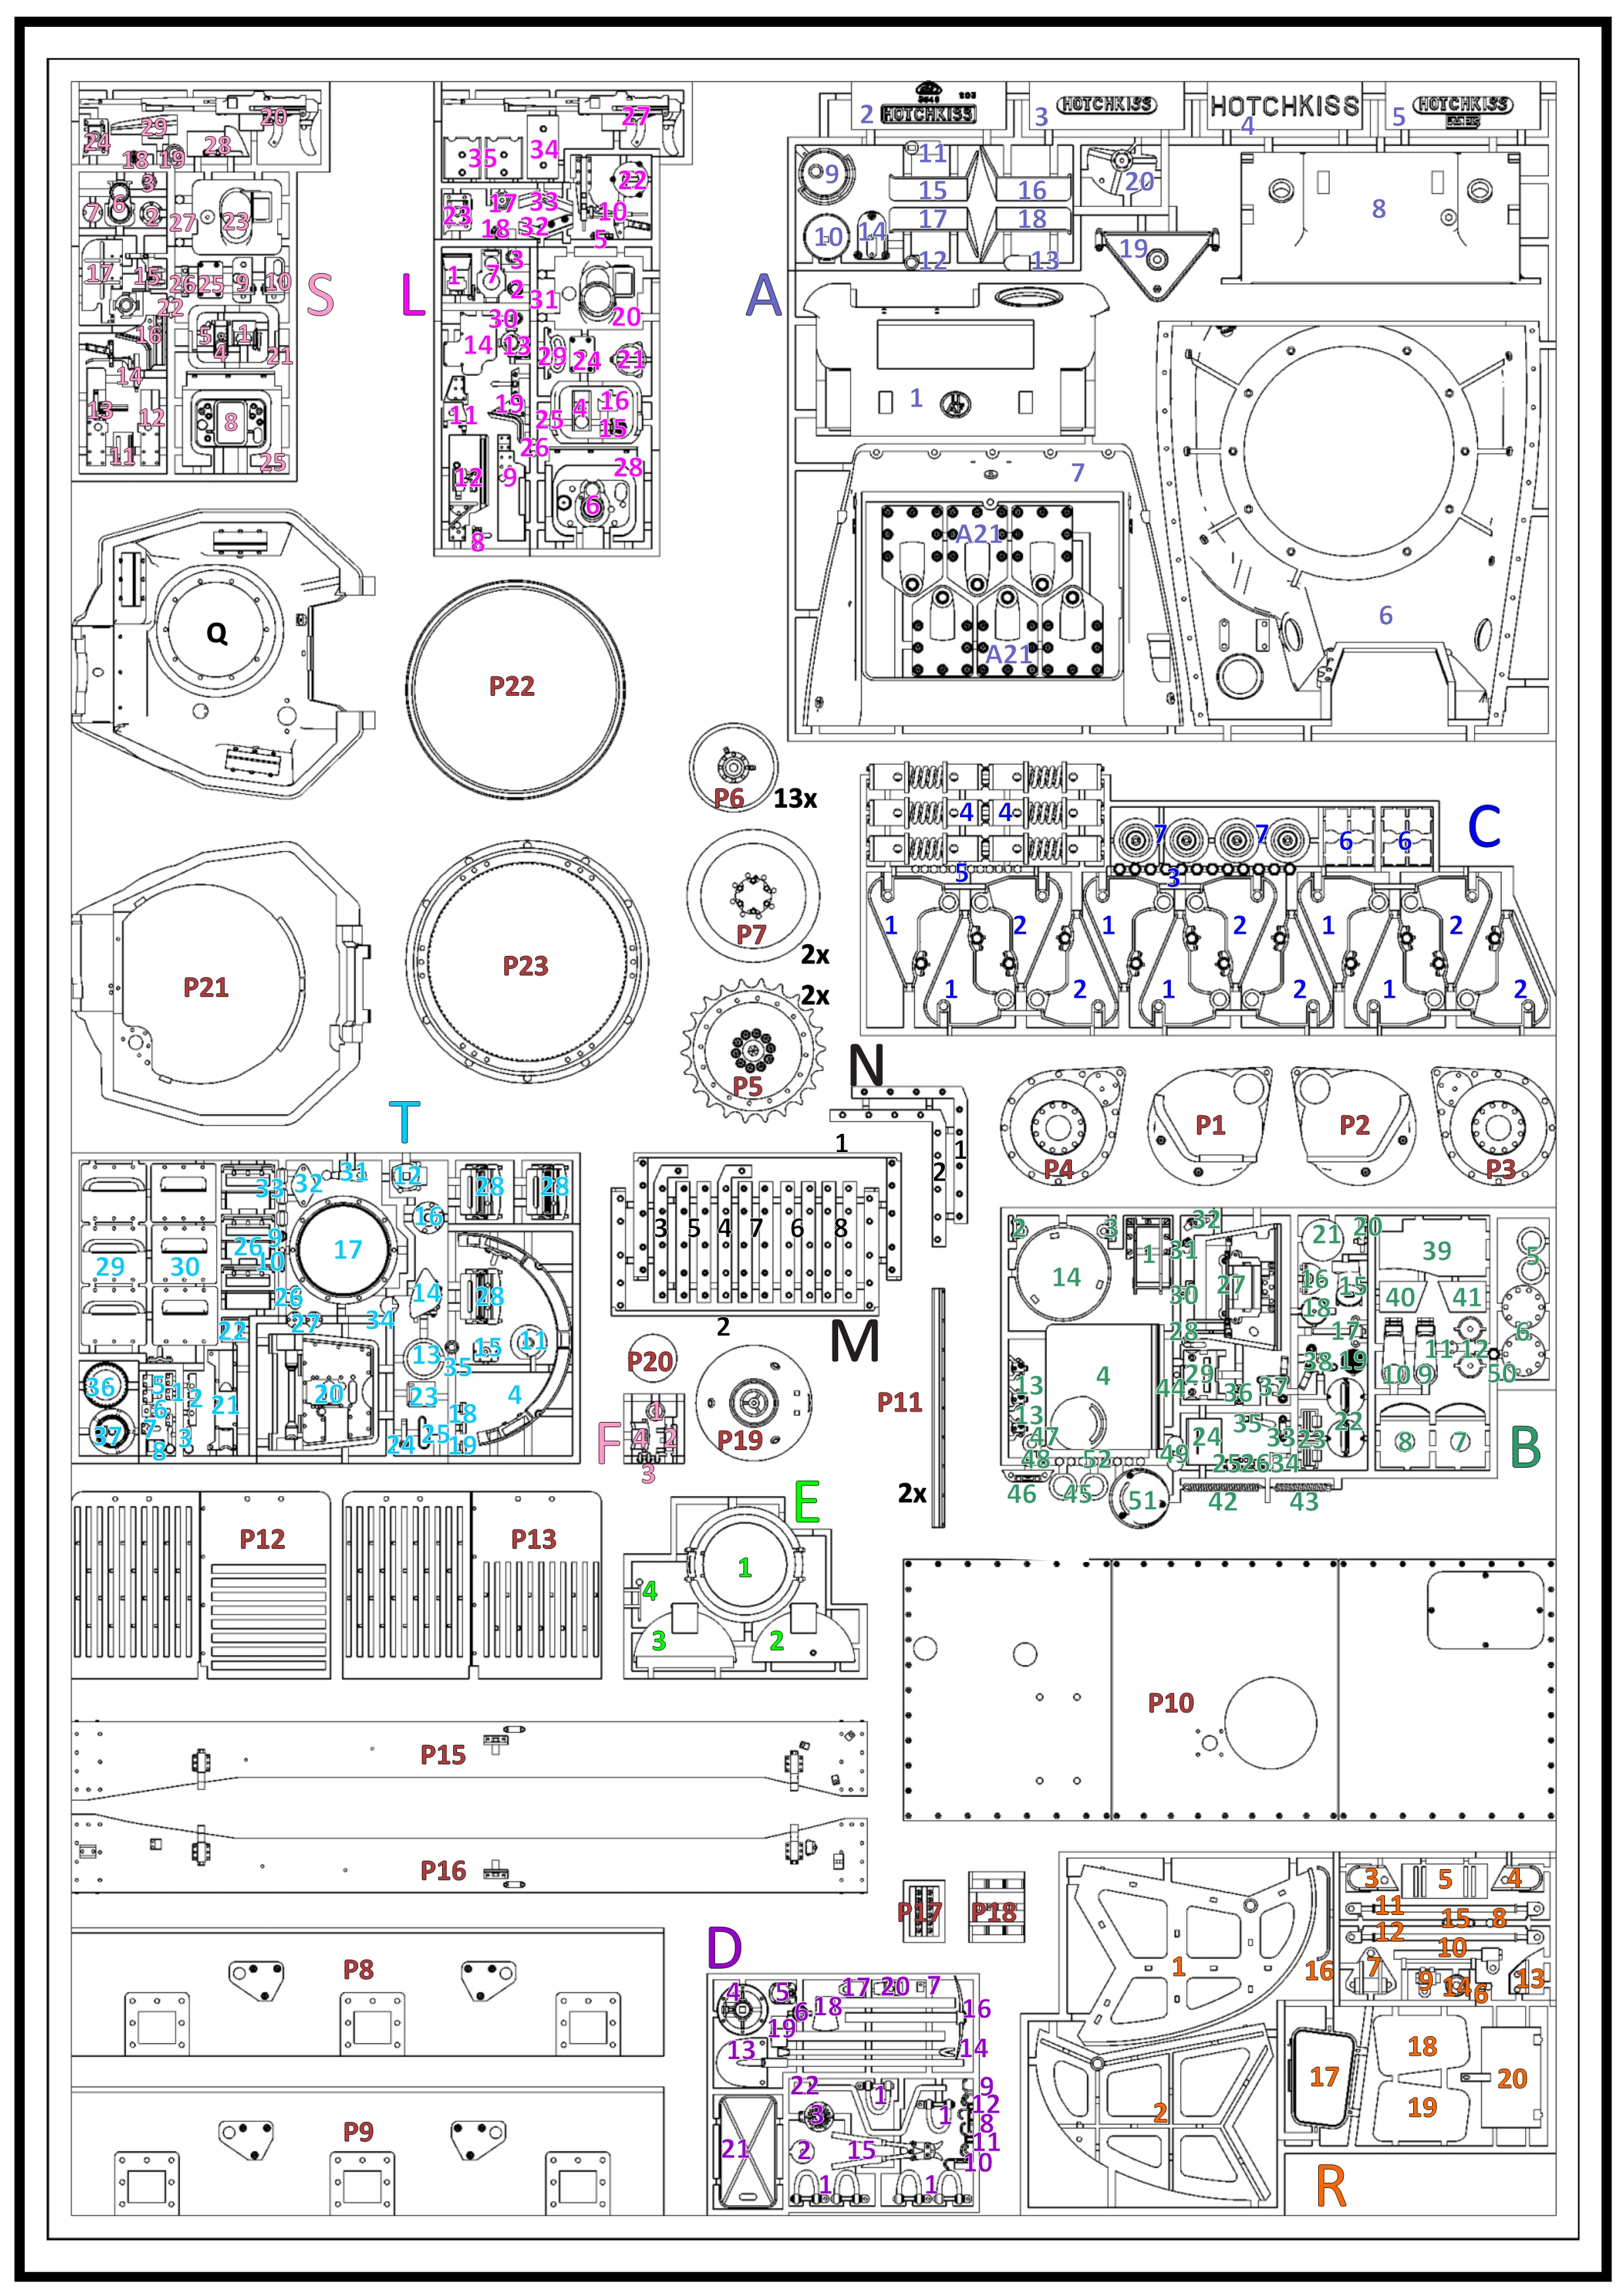 ETS35X01 - H39 Manual - Interior - p03 v2.jpg